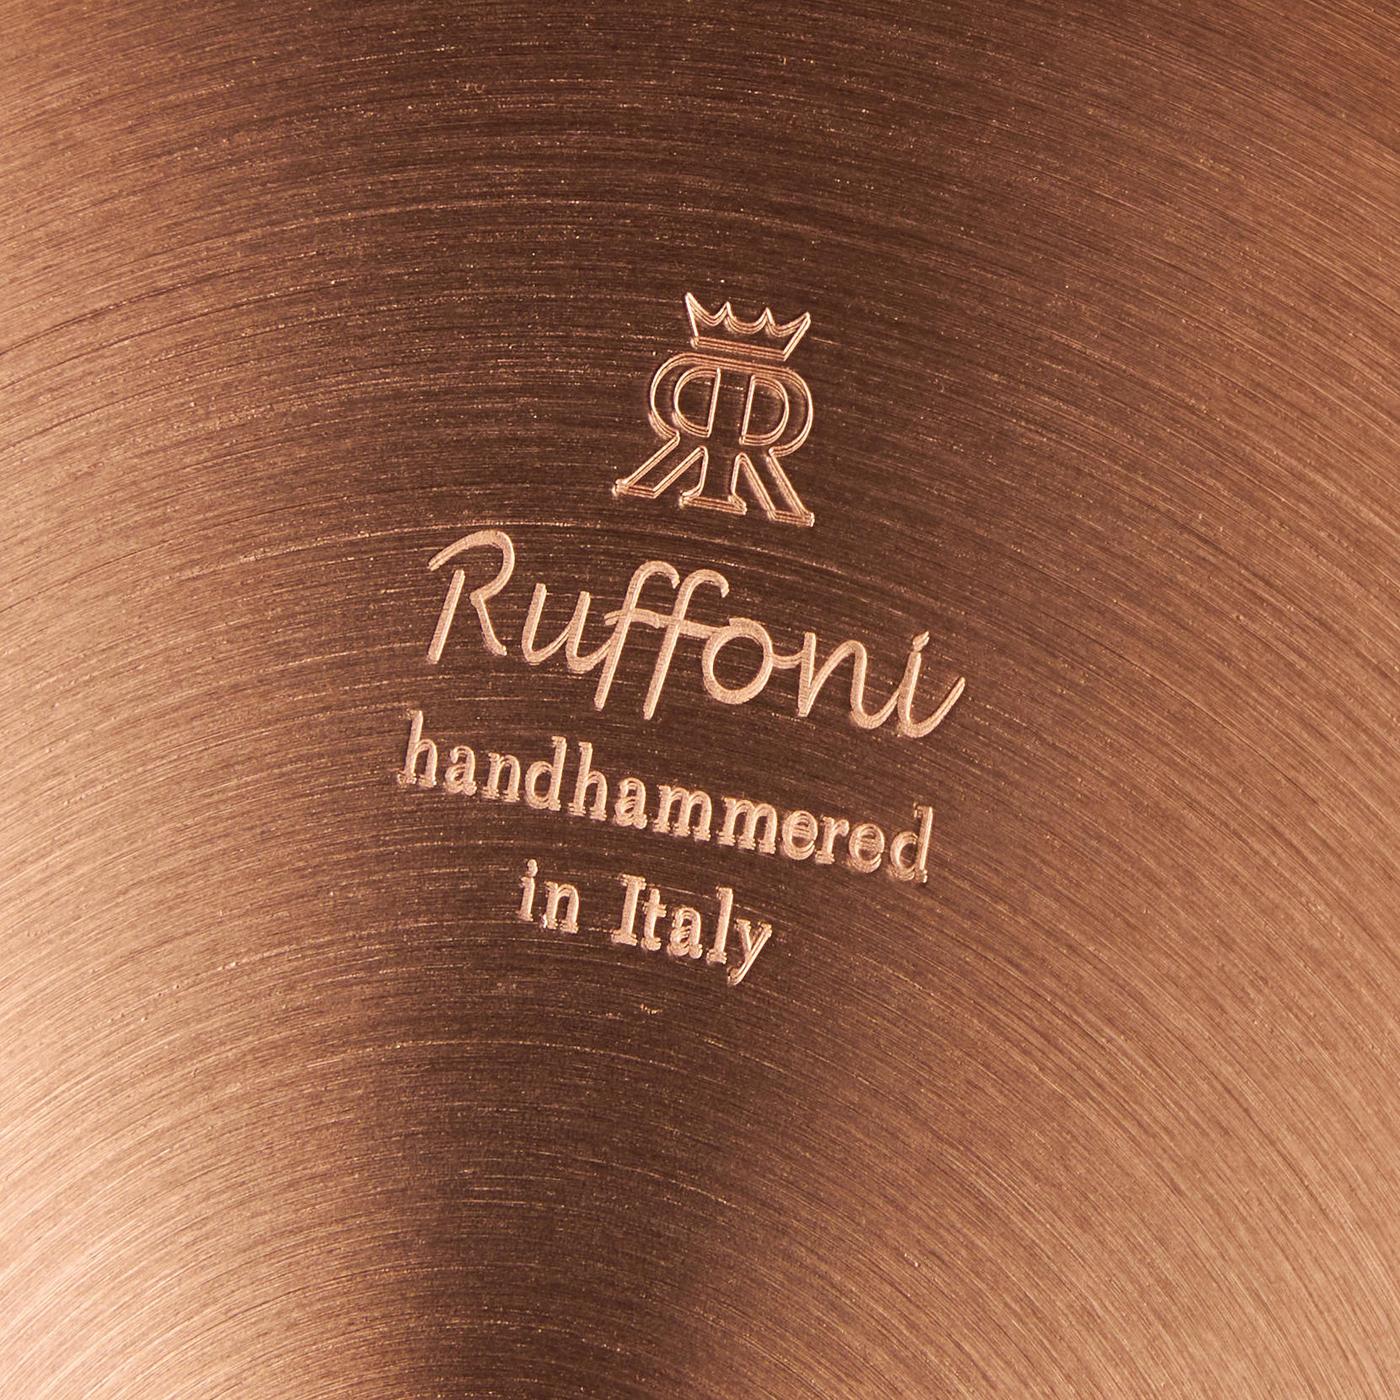 Ruffoni Opus Cupra Copper Stockpot, 8 qt.